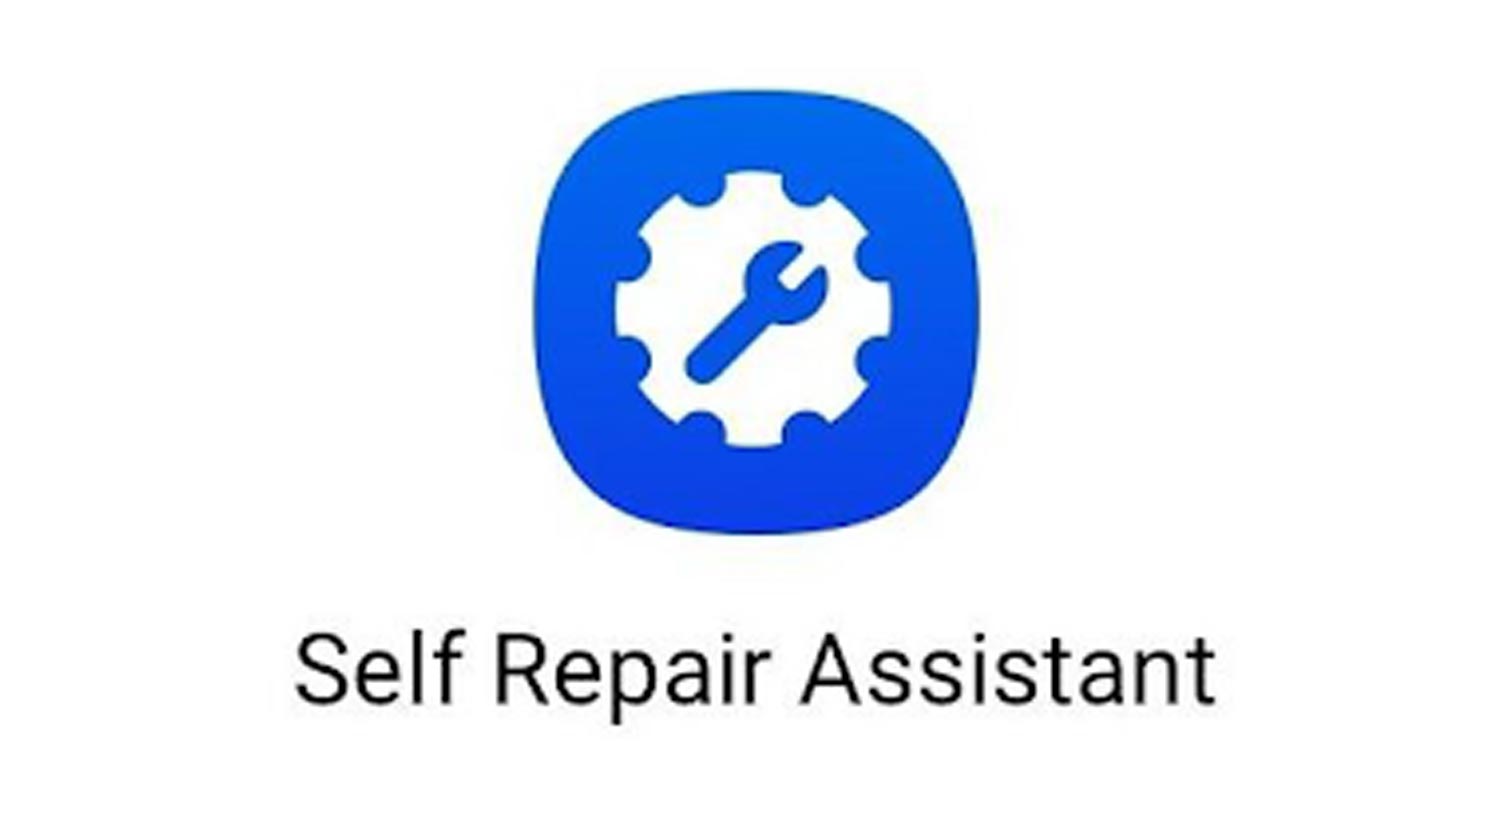 Samsung Self Repair Assistant